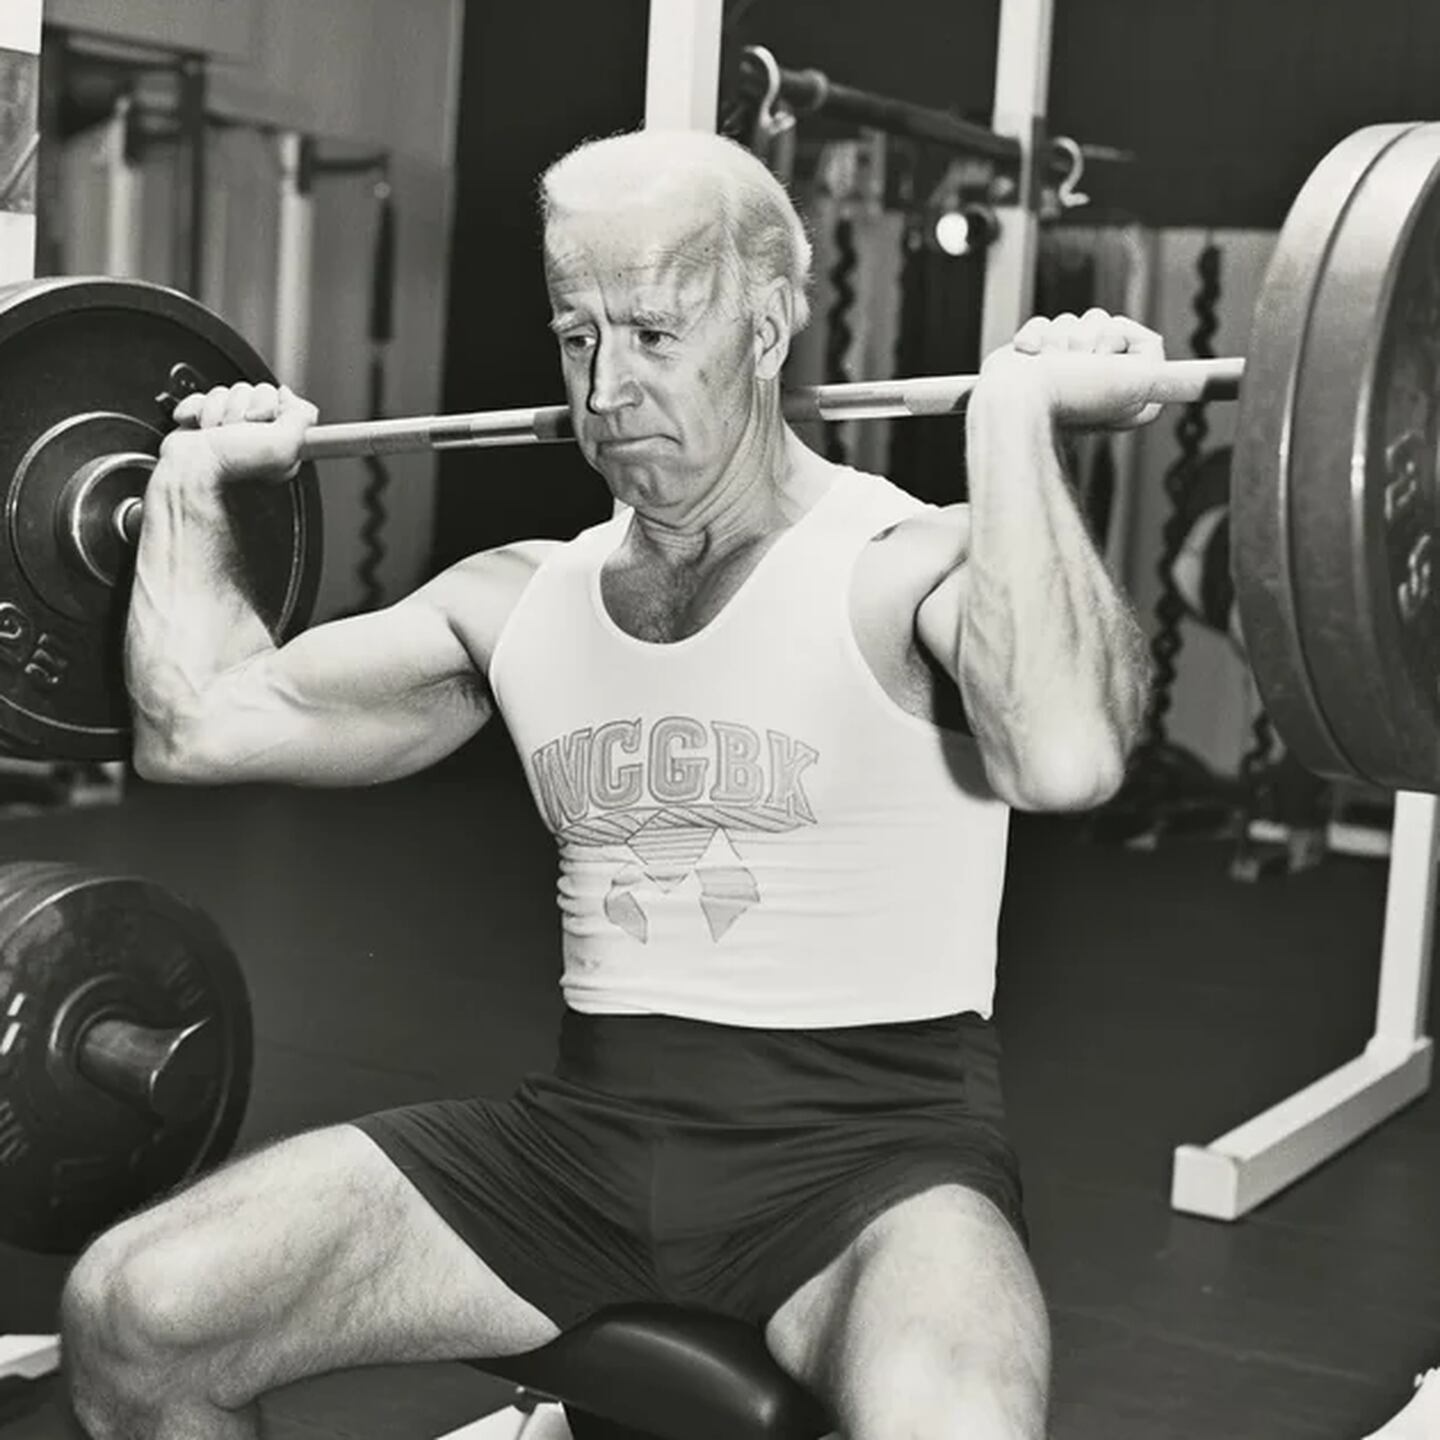 Joe Biden con cuerpo atlético, según la IA.